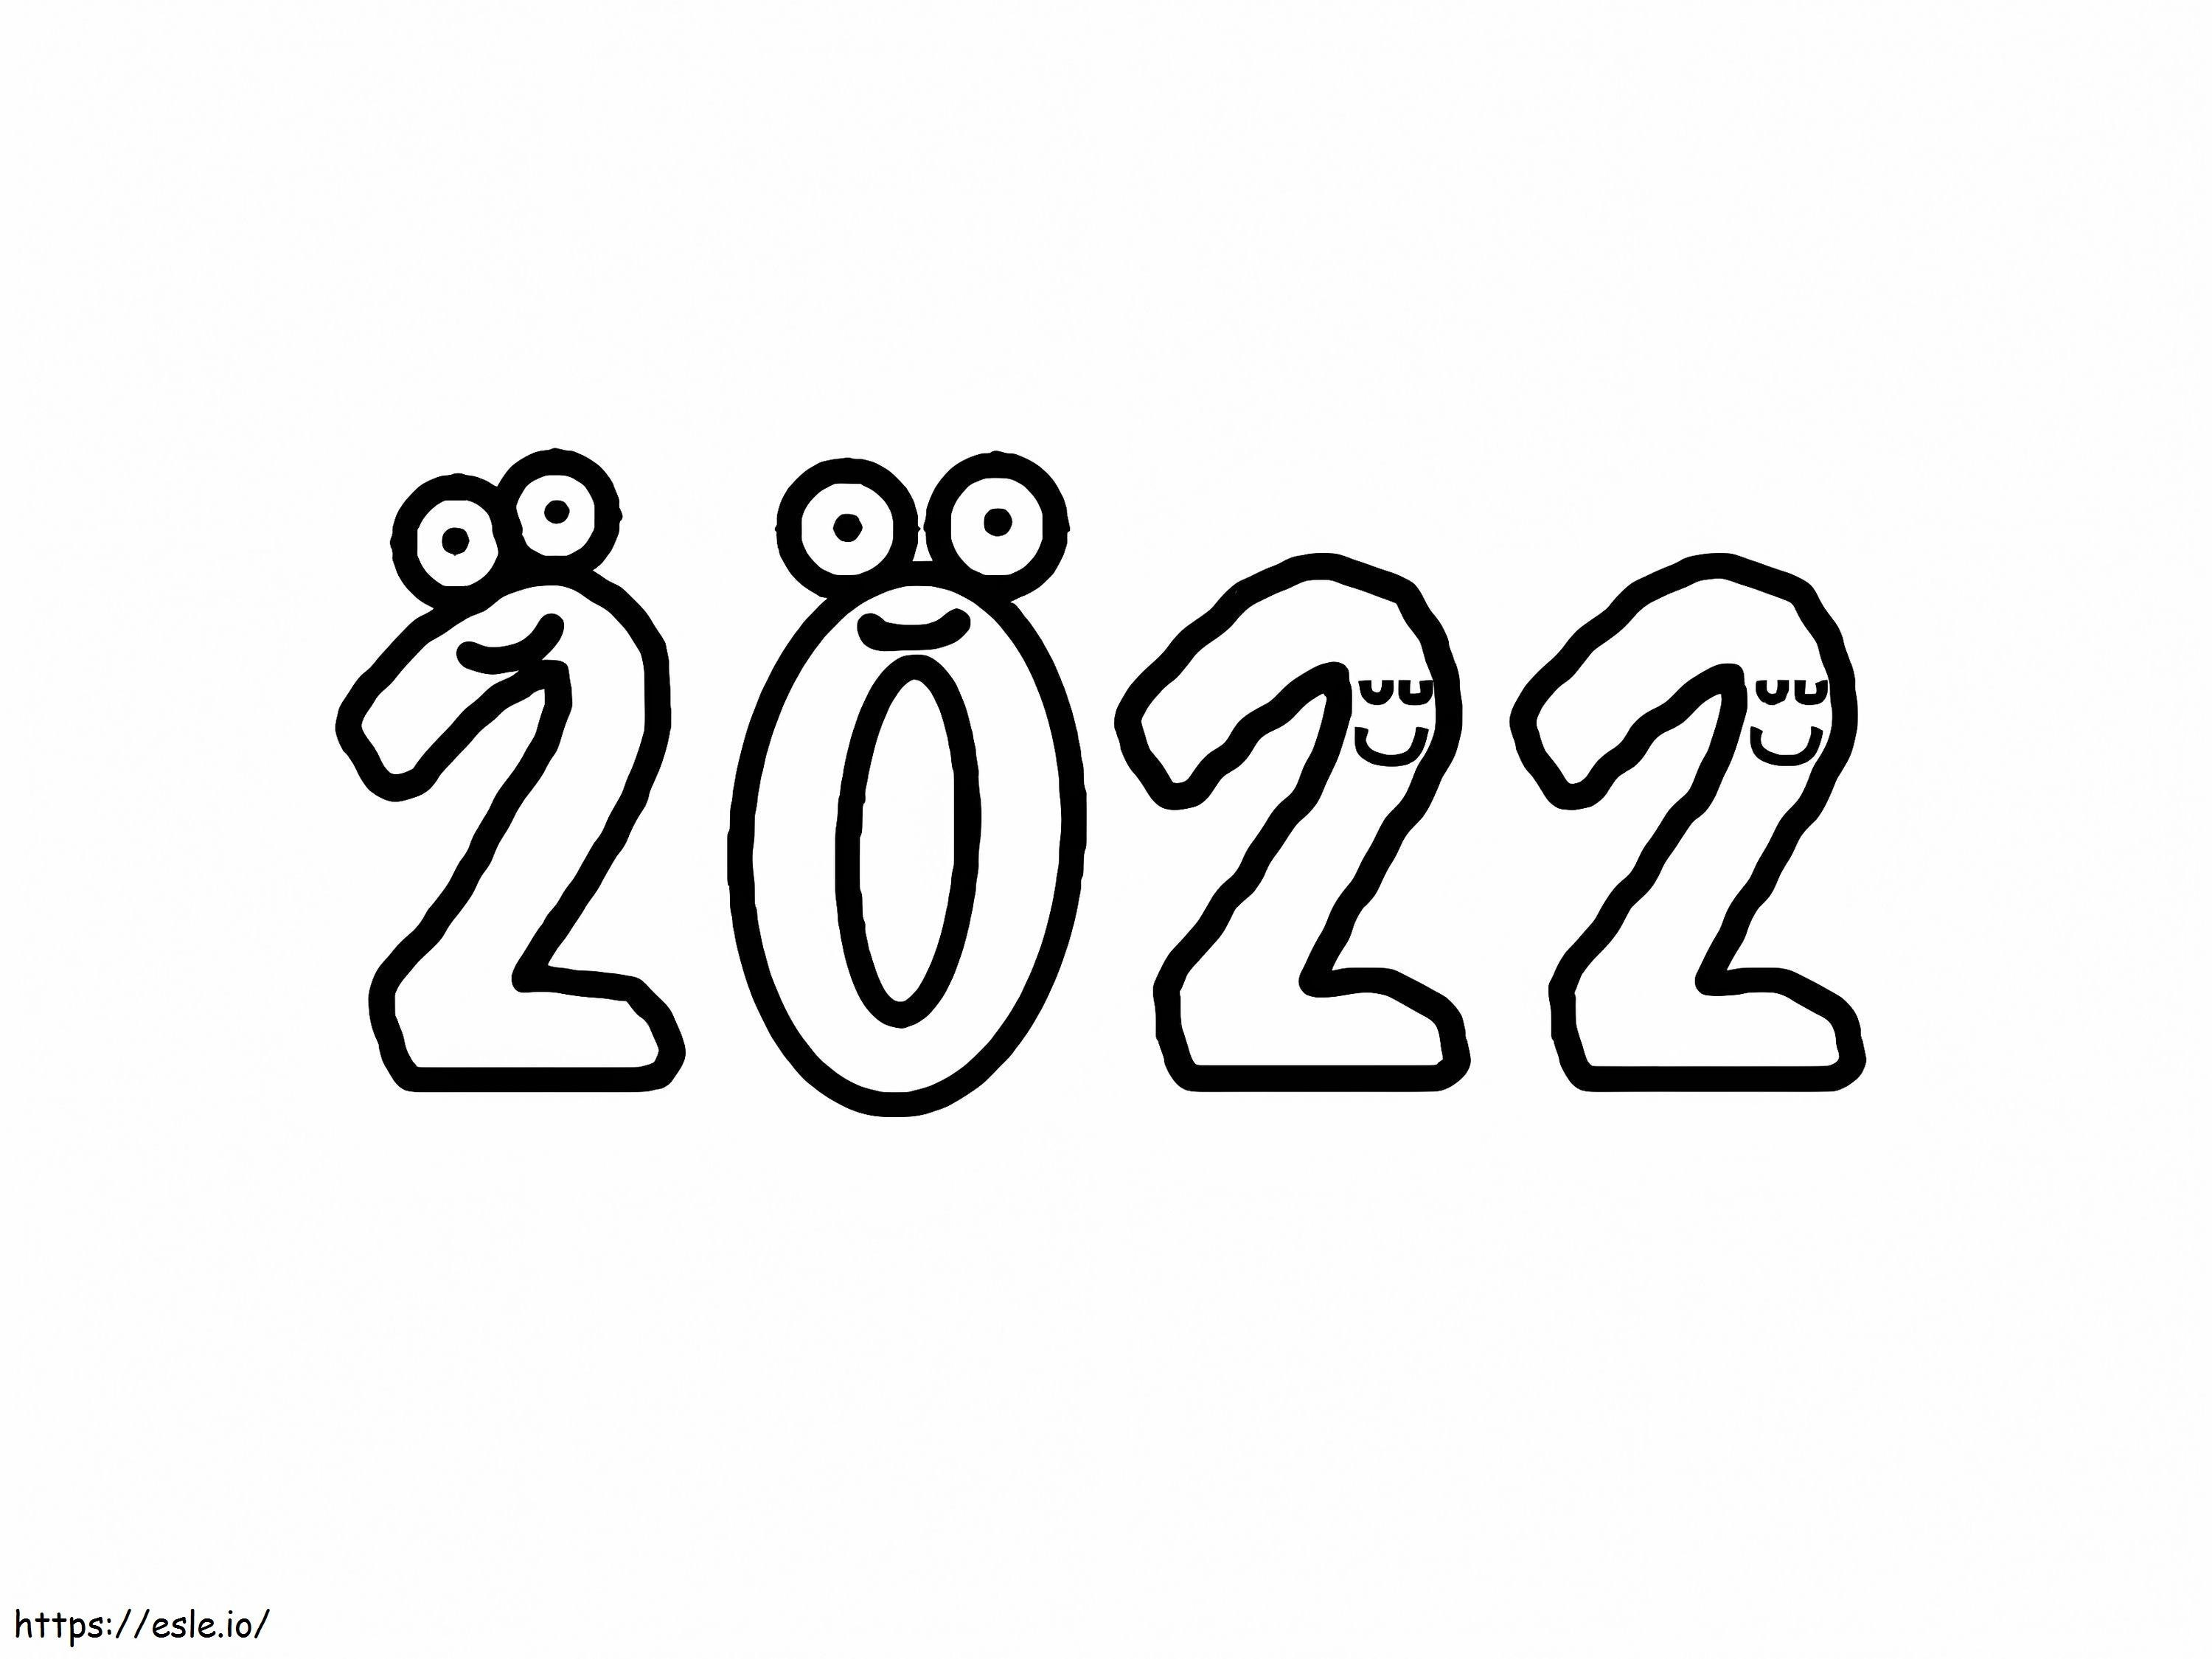 Anul Nou 2022 de colorat